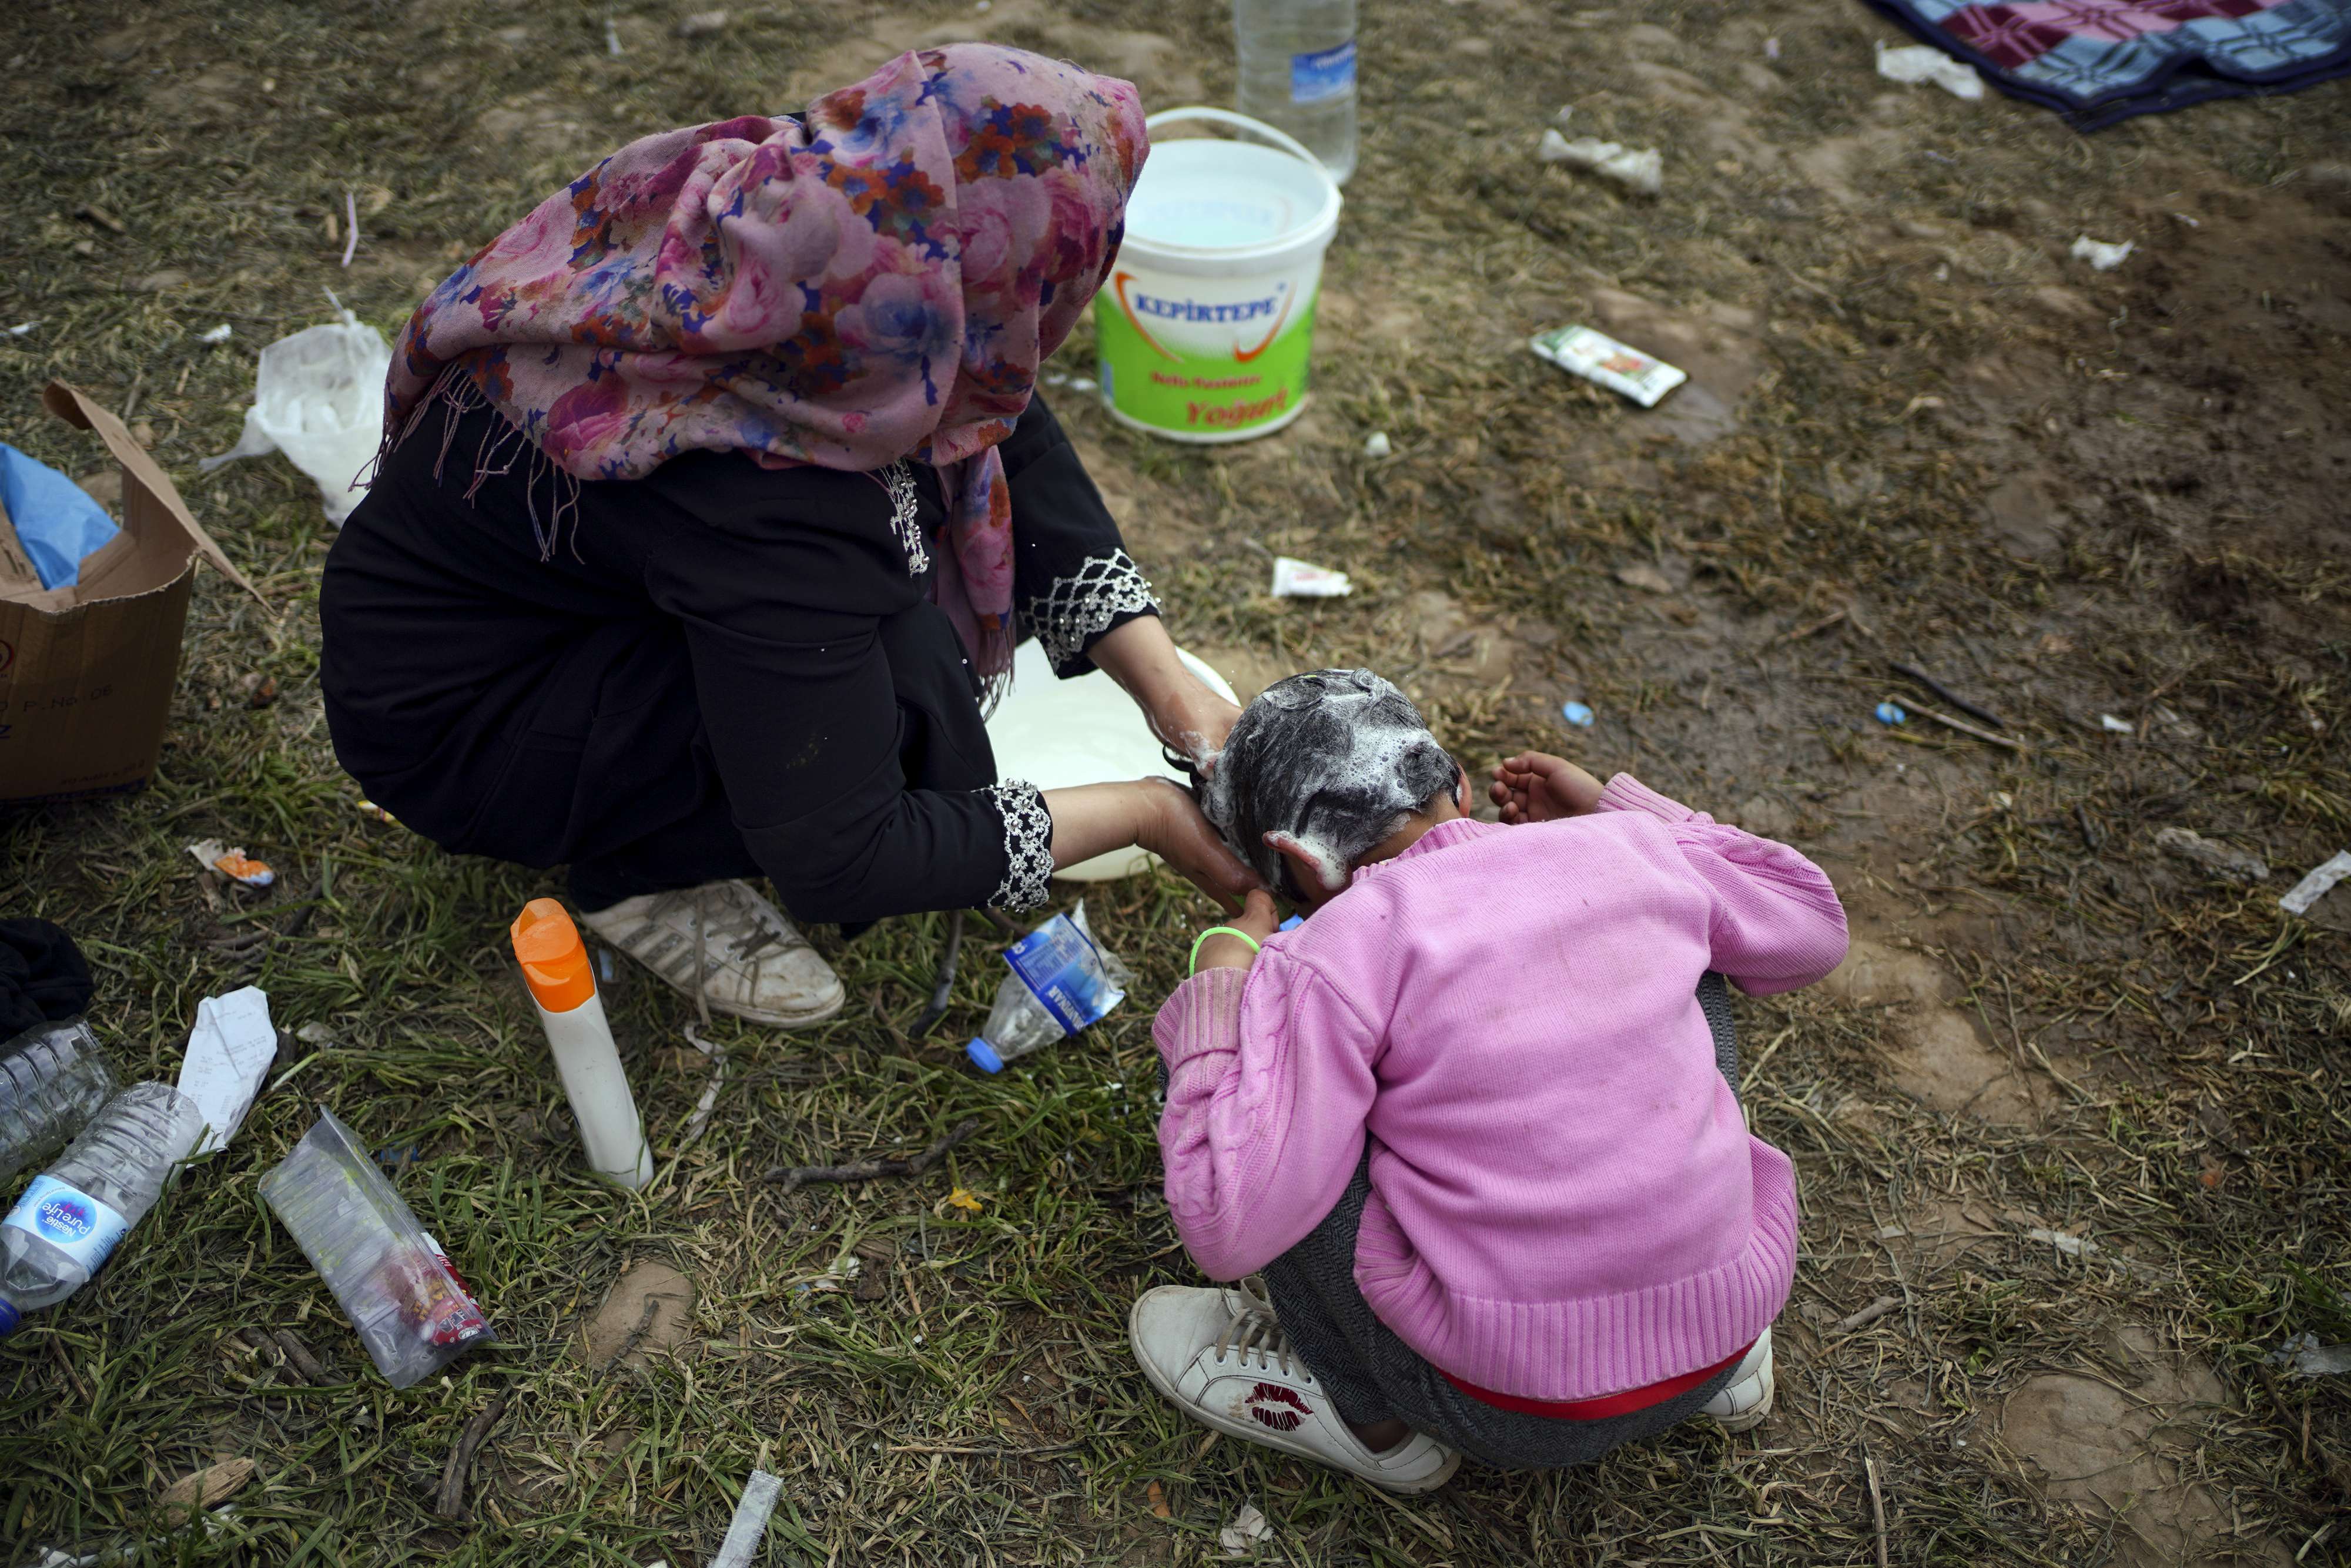 وضعية انسانية مزرية لللاجئين تتحمل السلطات التركية المسؤولية في تعميقها